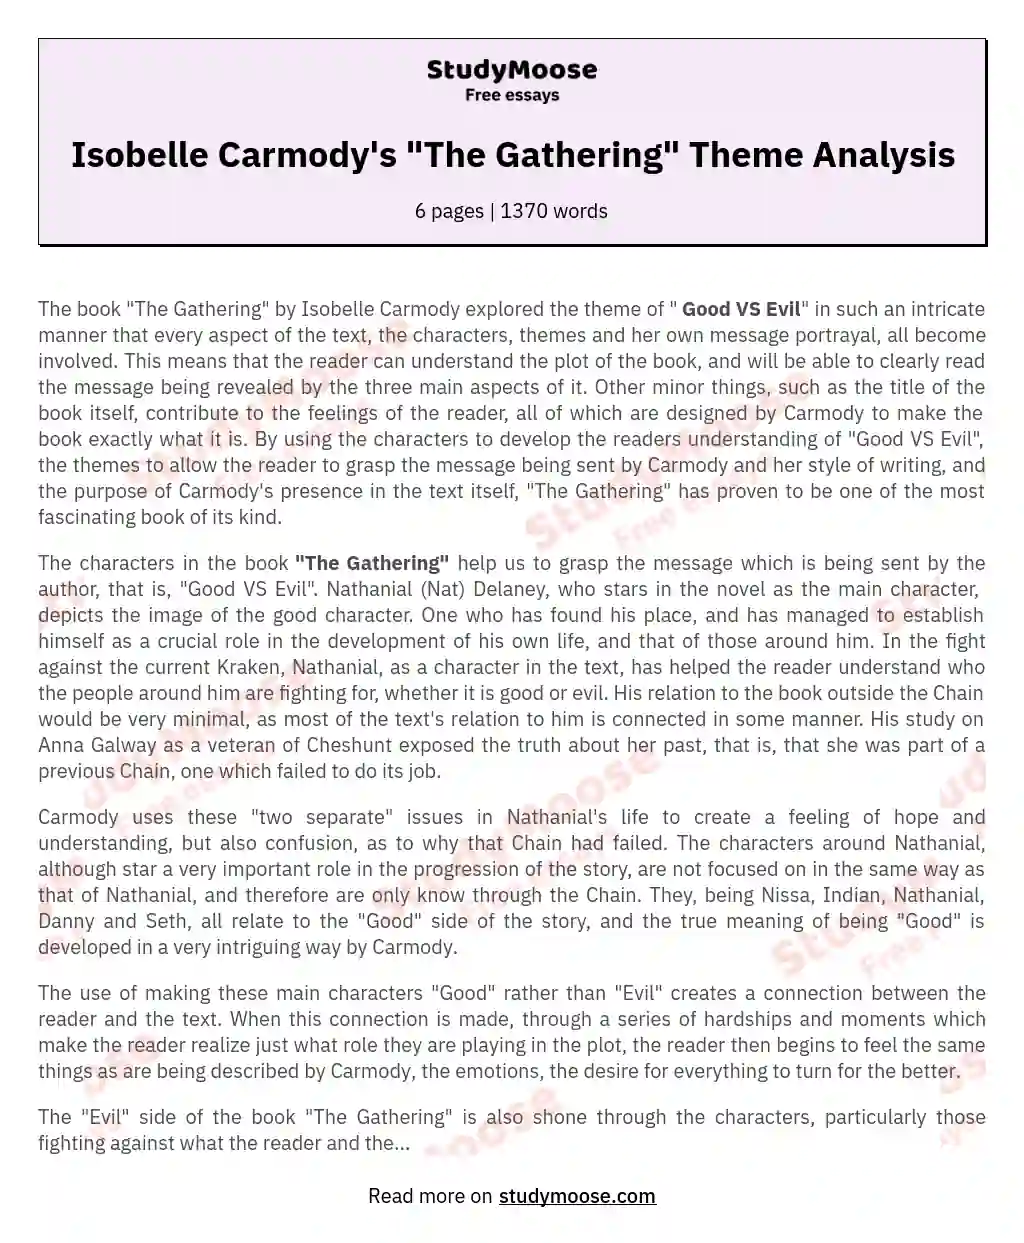 Isobelle Carmody's "The Gathering" Theme Analysis